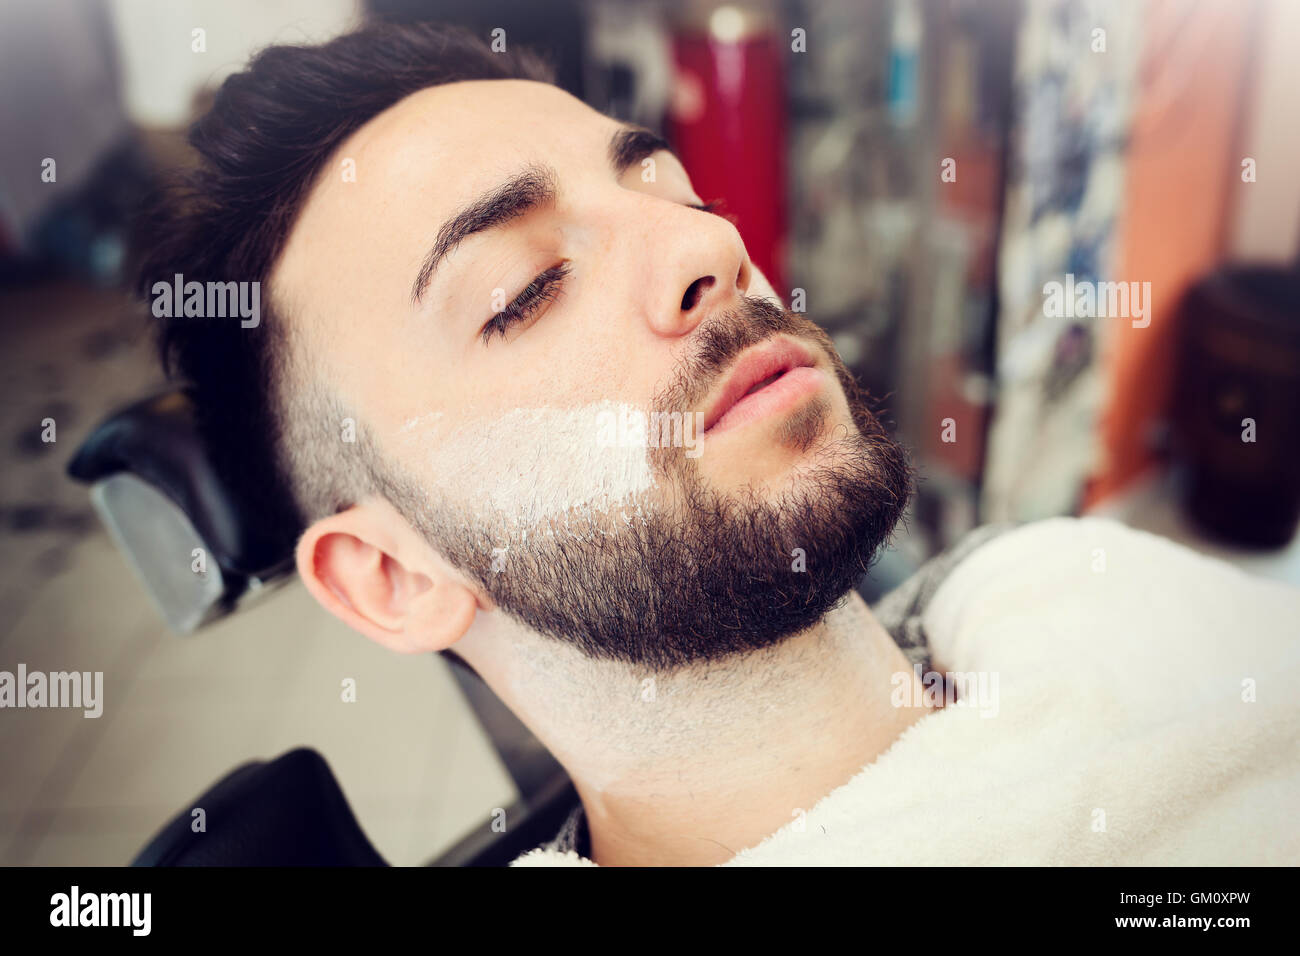 Rito della rasatura della barba in un vecchio stile di barbiere. Foto Stock